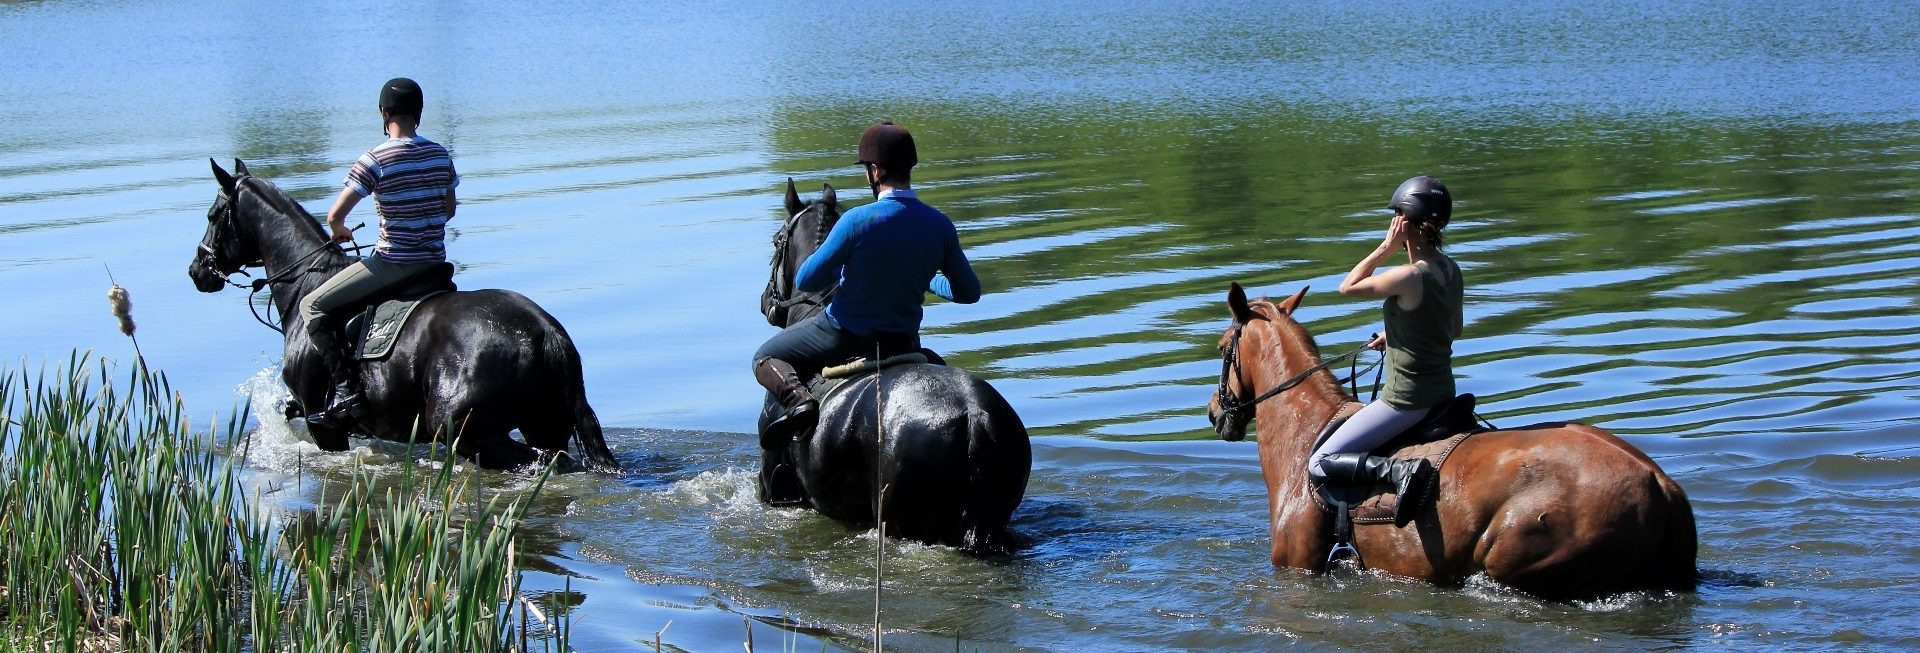 Zdjęcie przedstawiające trzech jeźdźców jadących na koniach brzegiem jeziora ze stadniny w Pałacu w Galinach. 